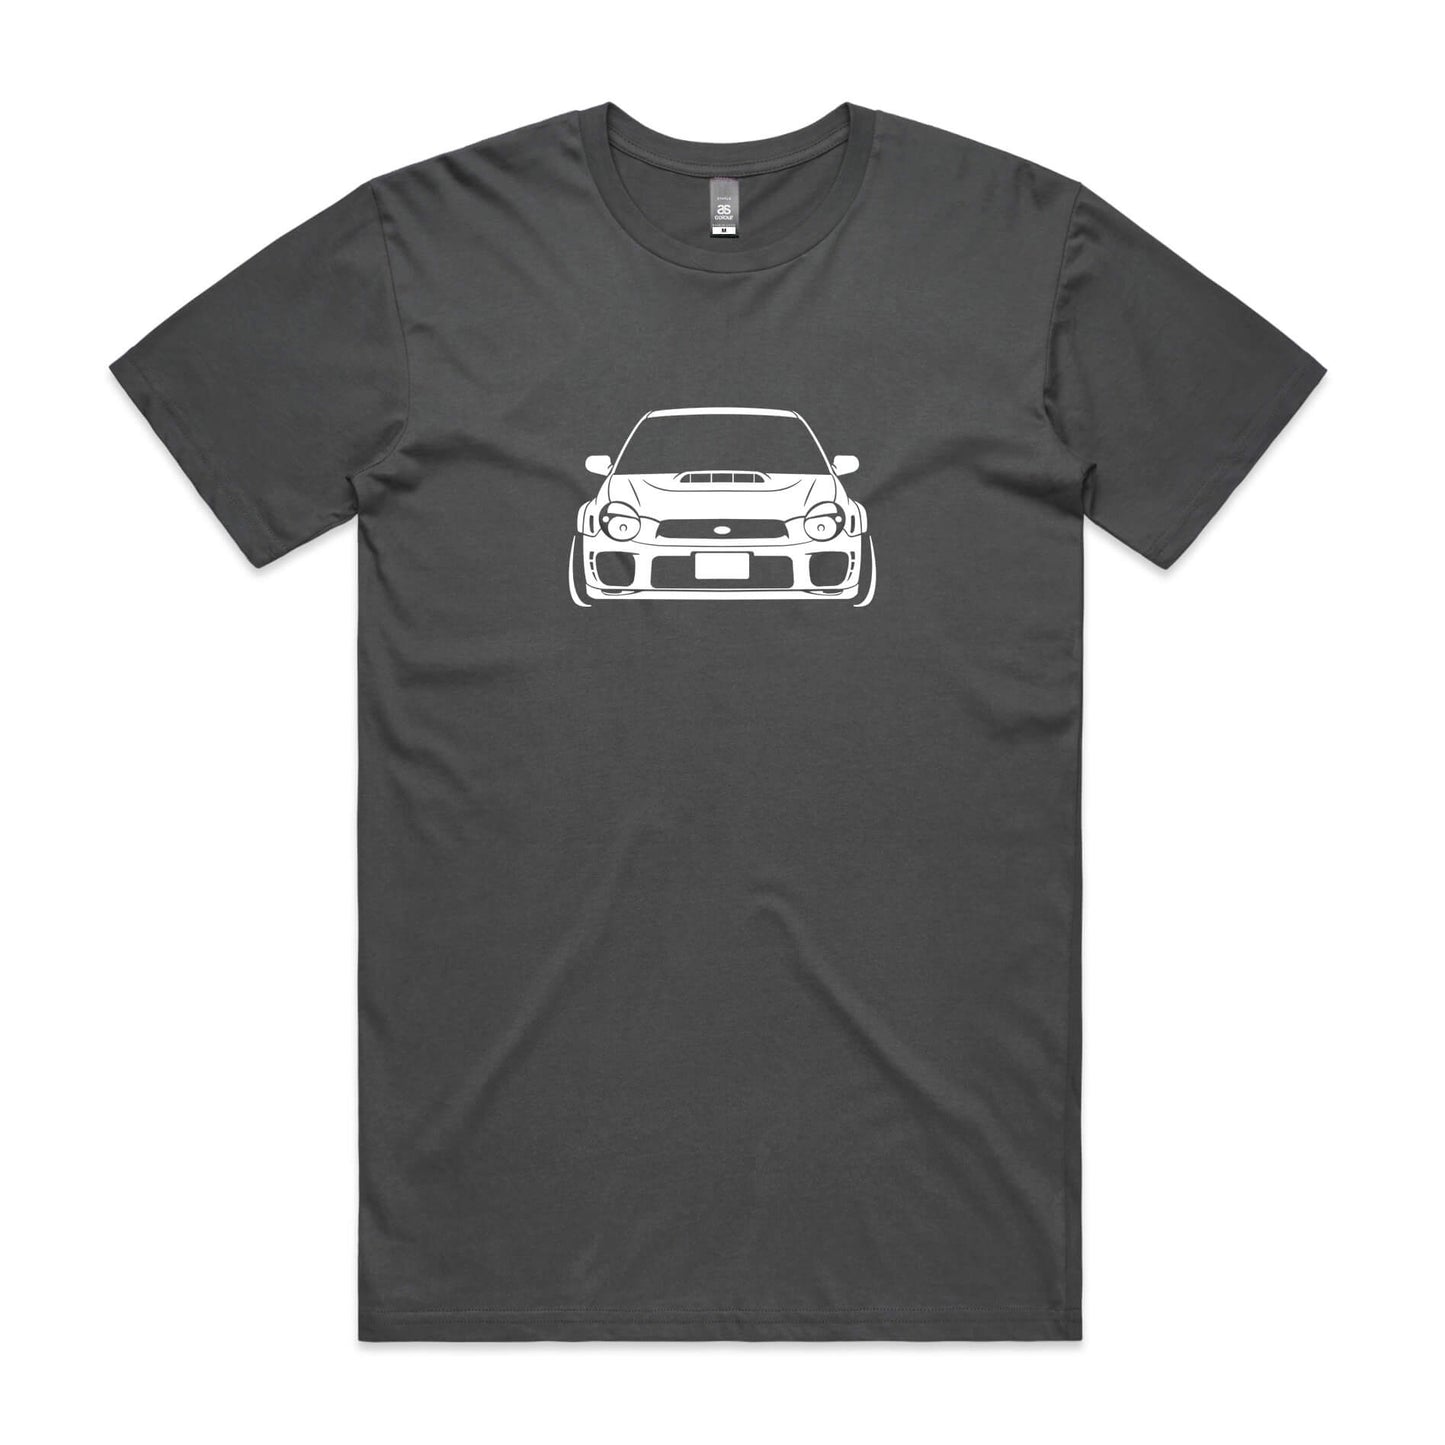 Subaru WRX Bugeye t-shirt in charcoal grey